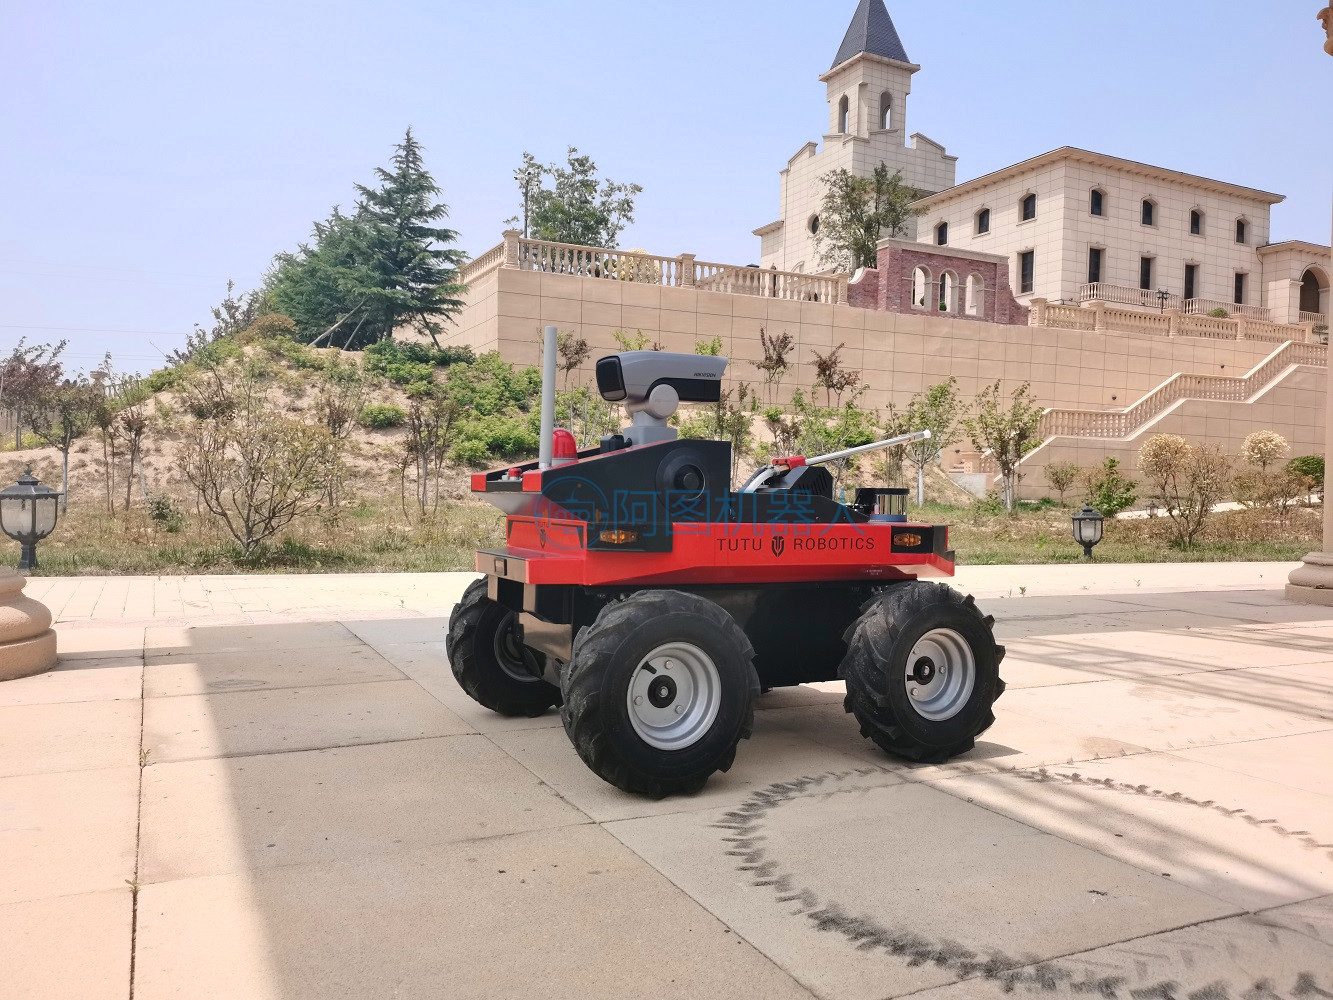 El guardia autónomo del robot de la patrulla de seguridad de la rueda al aire libre tiene una fuerte capacidad de protección para uso doméstico